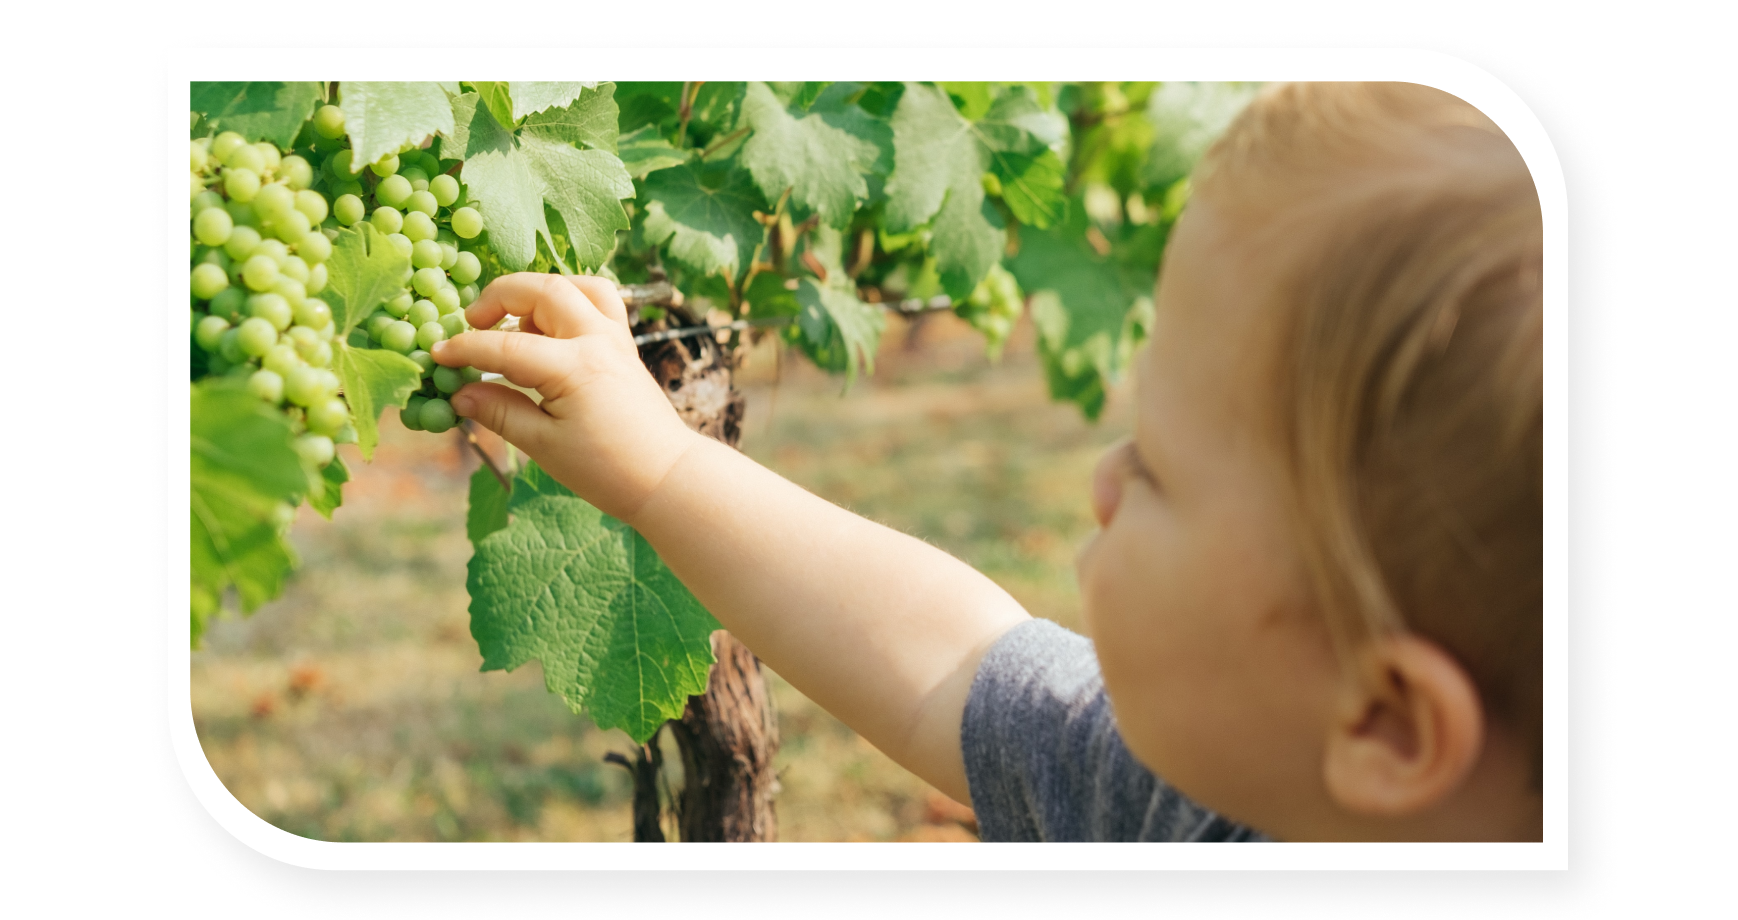 Kid helping in grape harvest